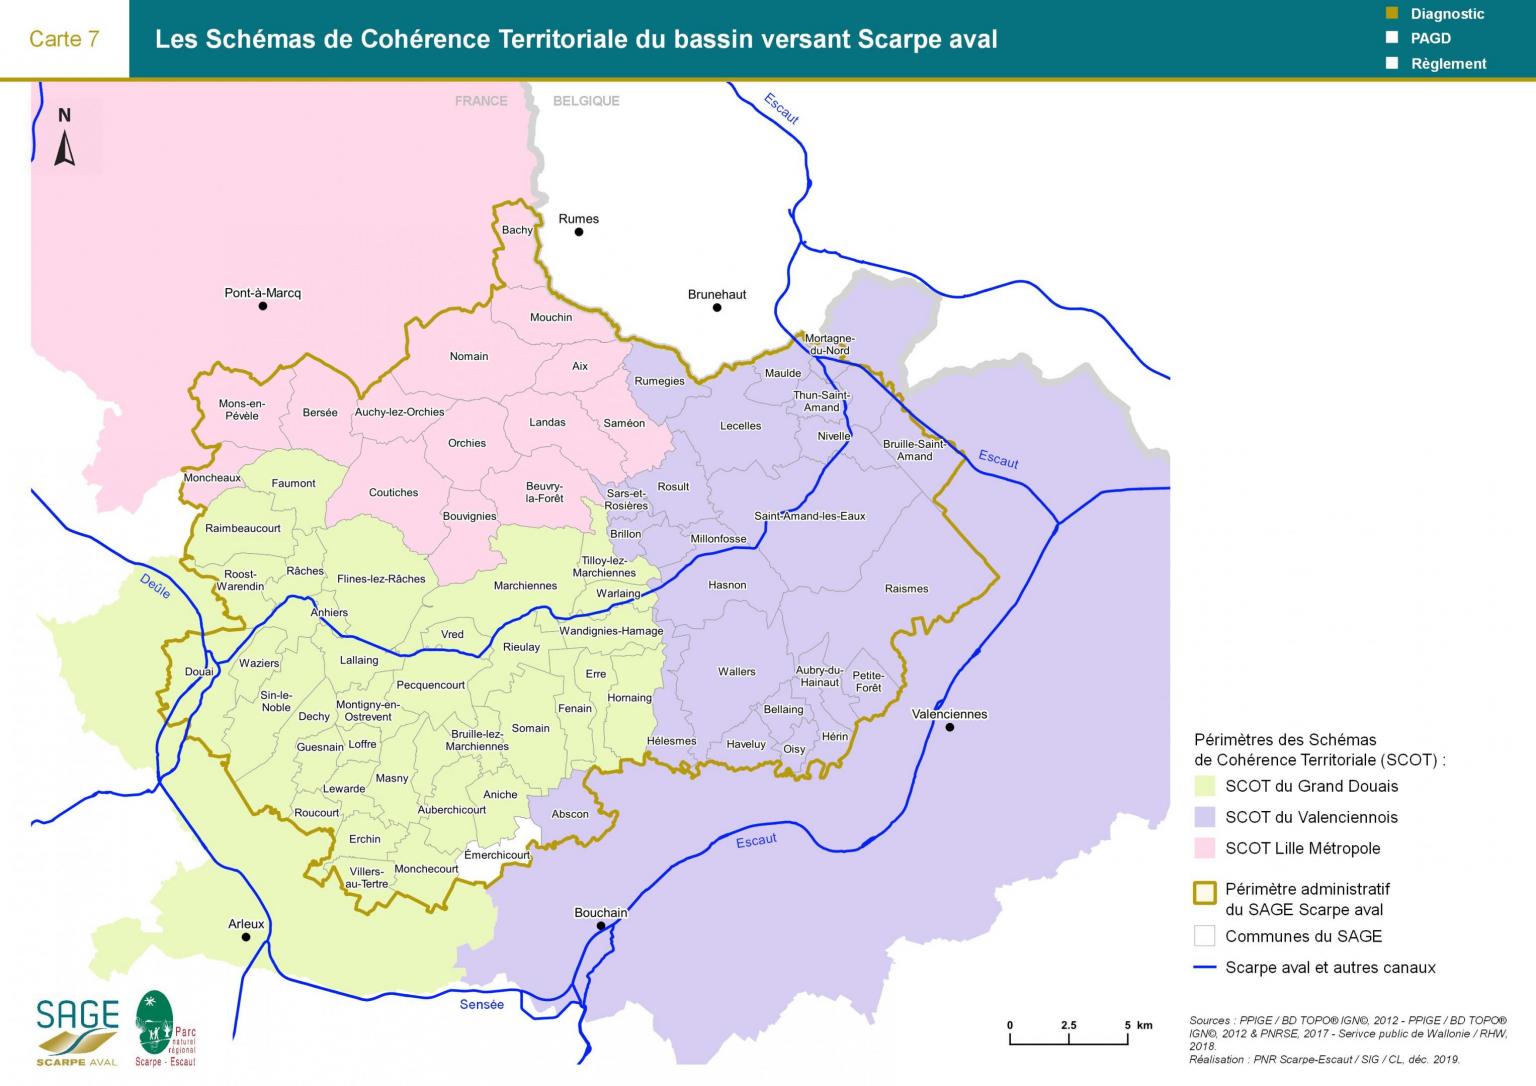 Etat des lieux - Carte 7 : Les Schémas de Cohérence Territoriale du bassin versant Scarpe aval